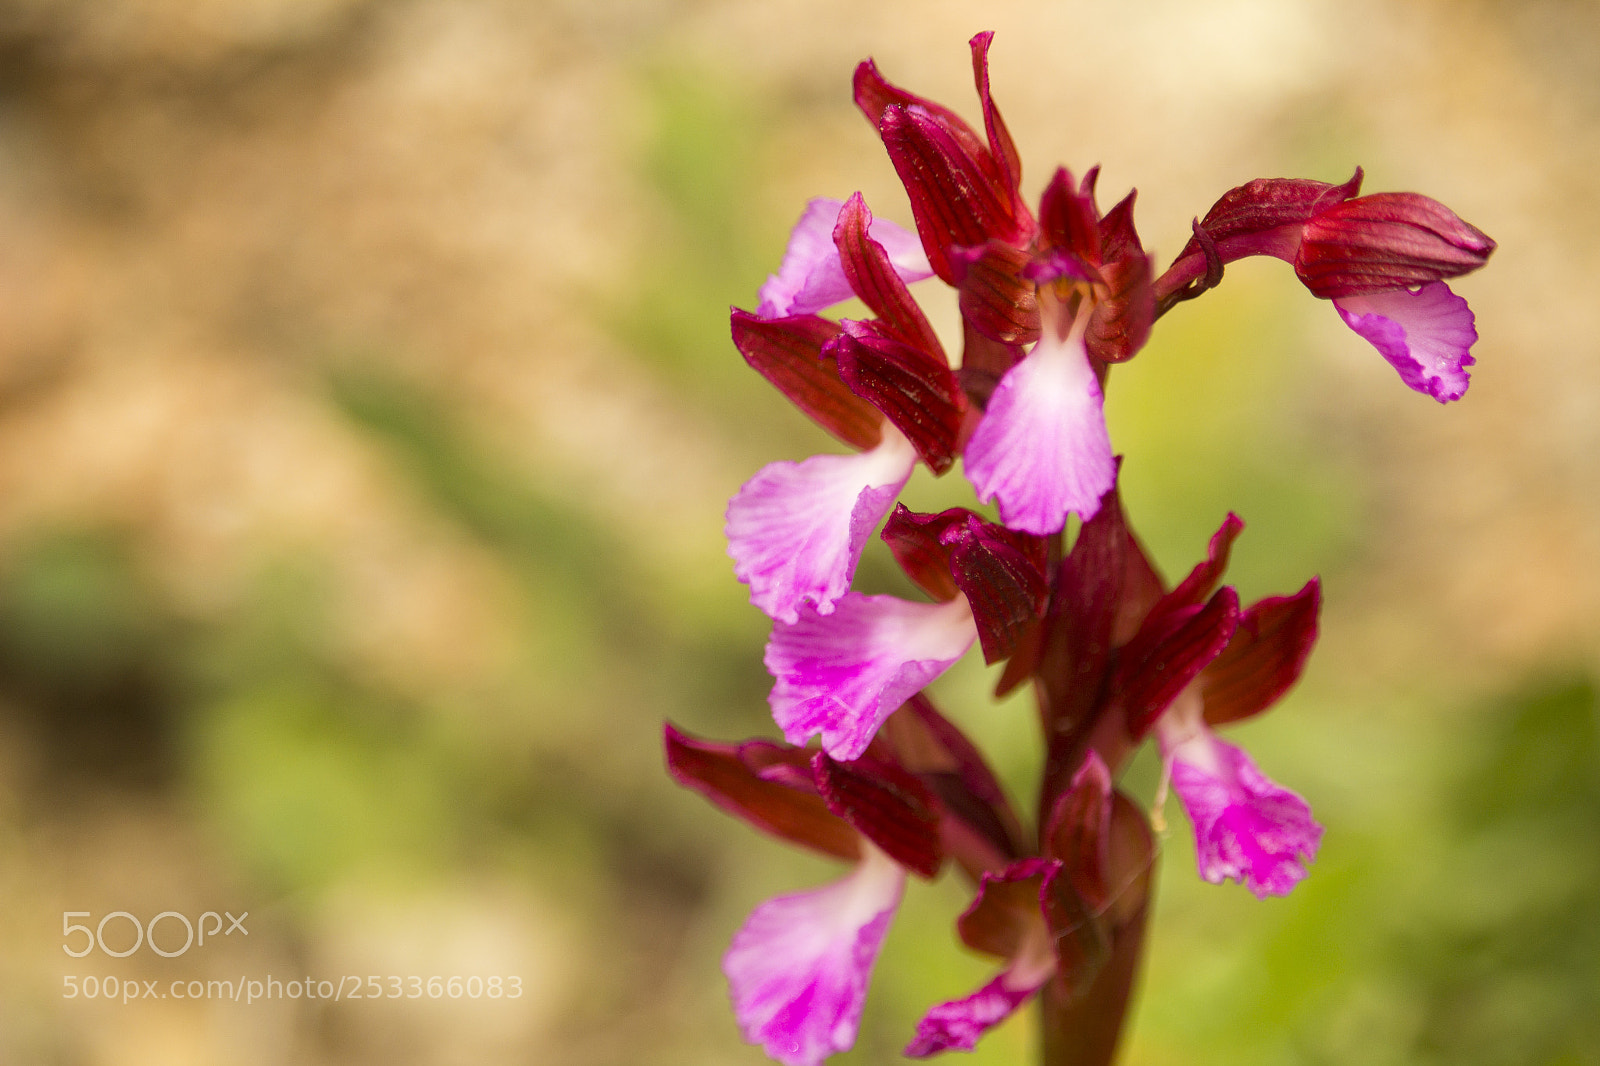 Canon EOS 1200D (EOS Rebel T5 / EOS Kiss X70 / EOS Hi) sample photo. Orchis papilionacea - orchidea photography